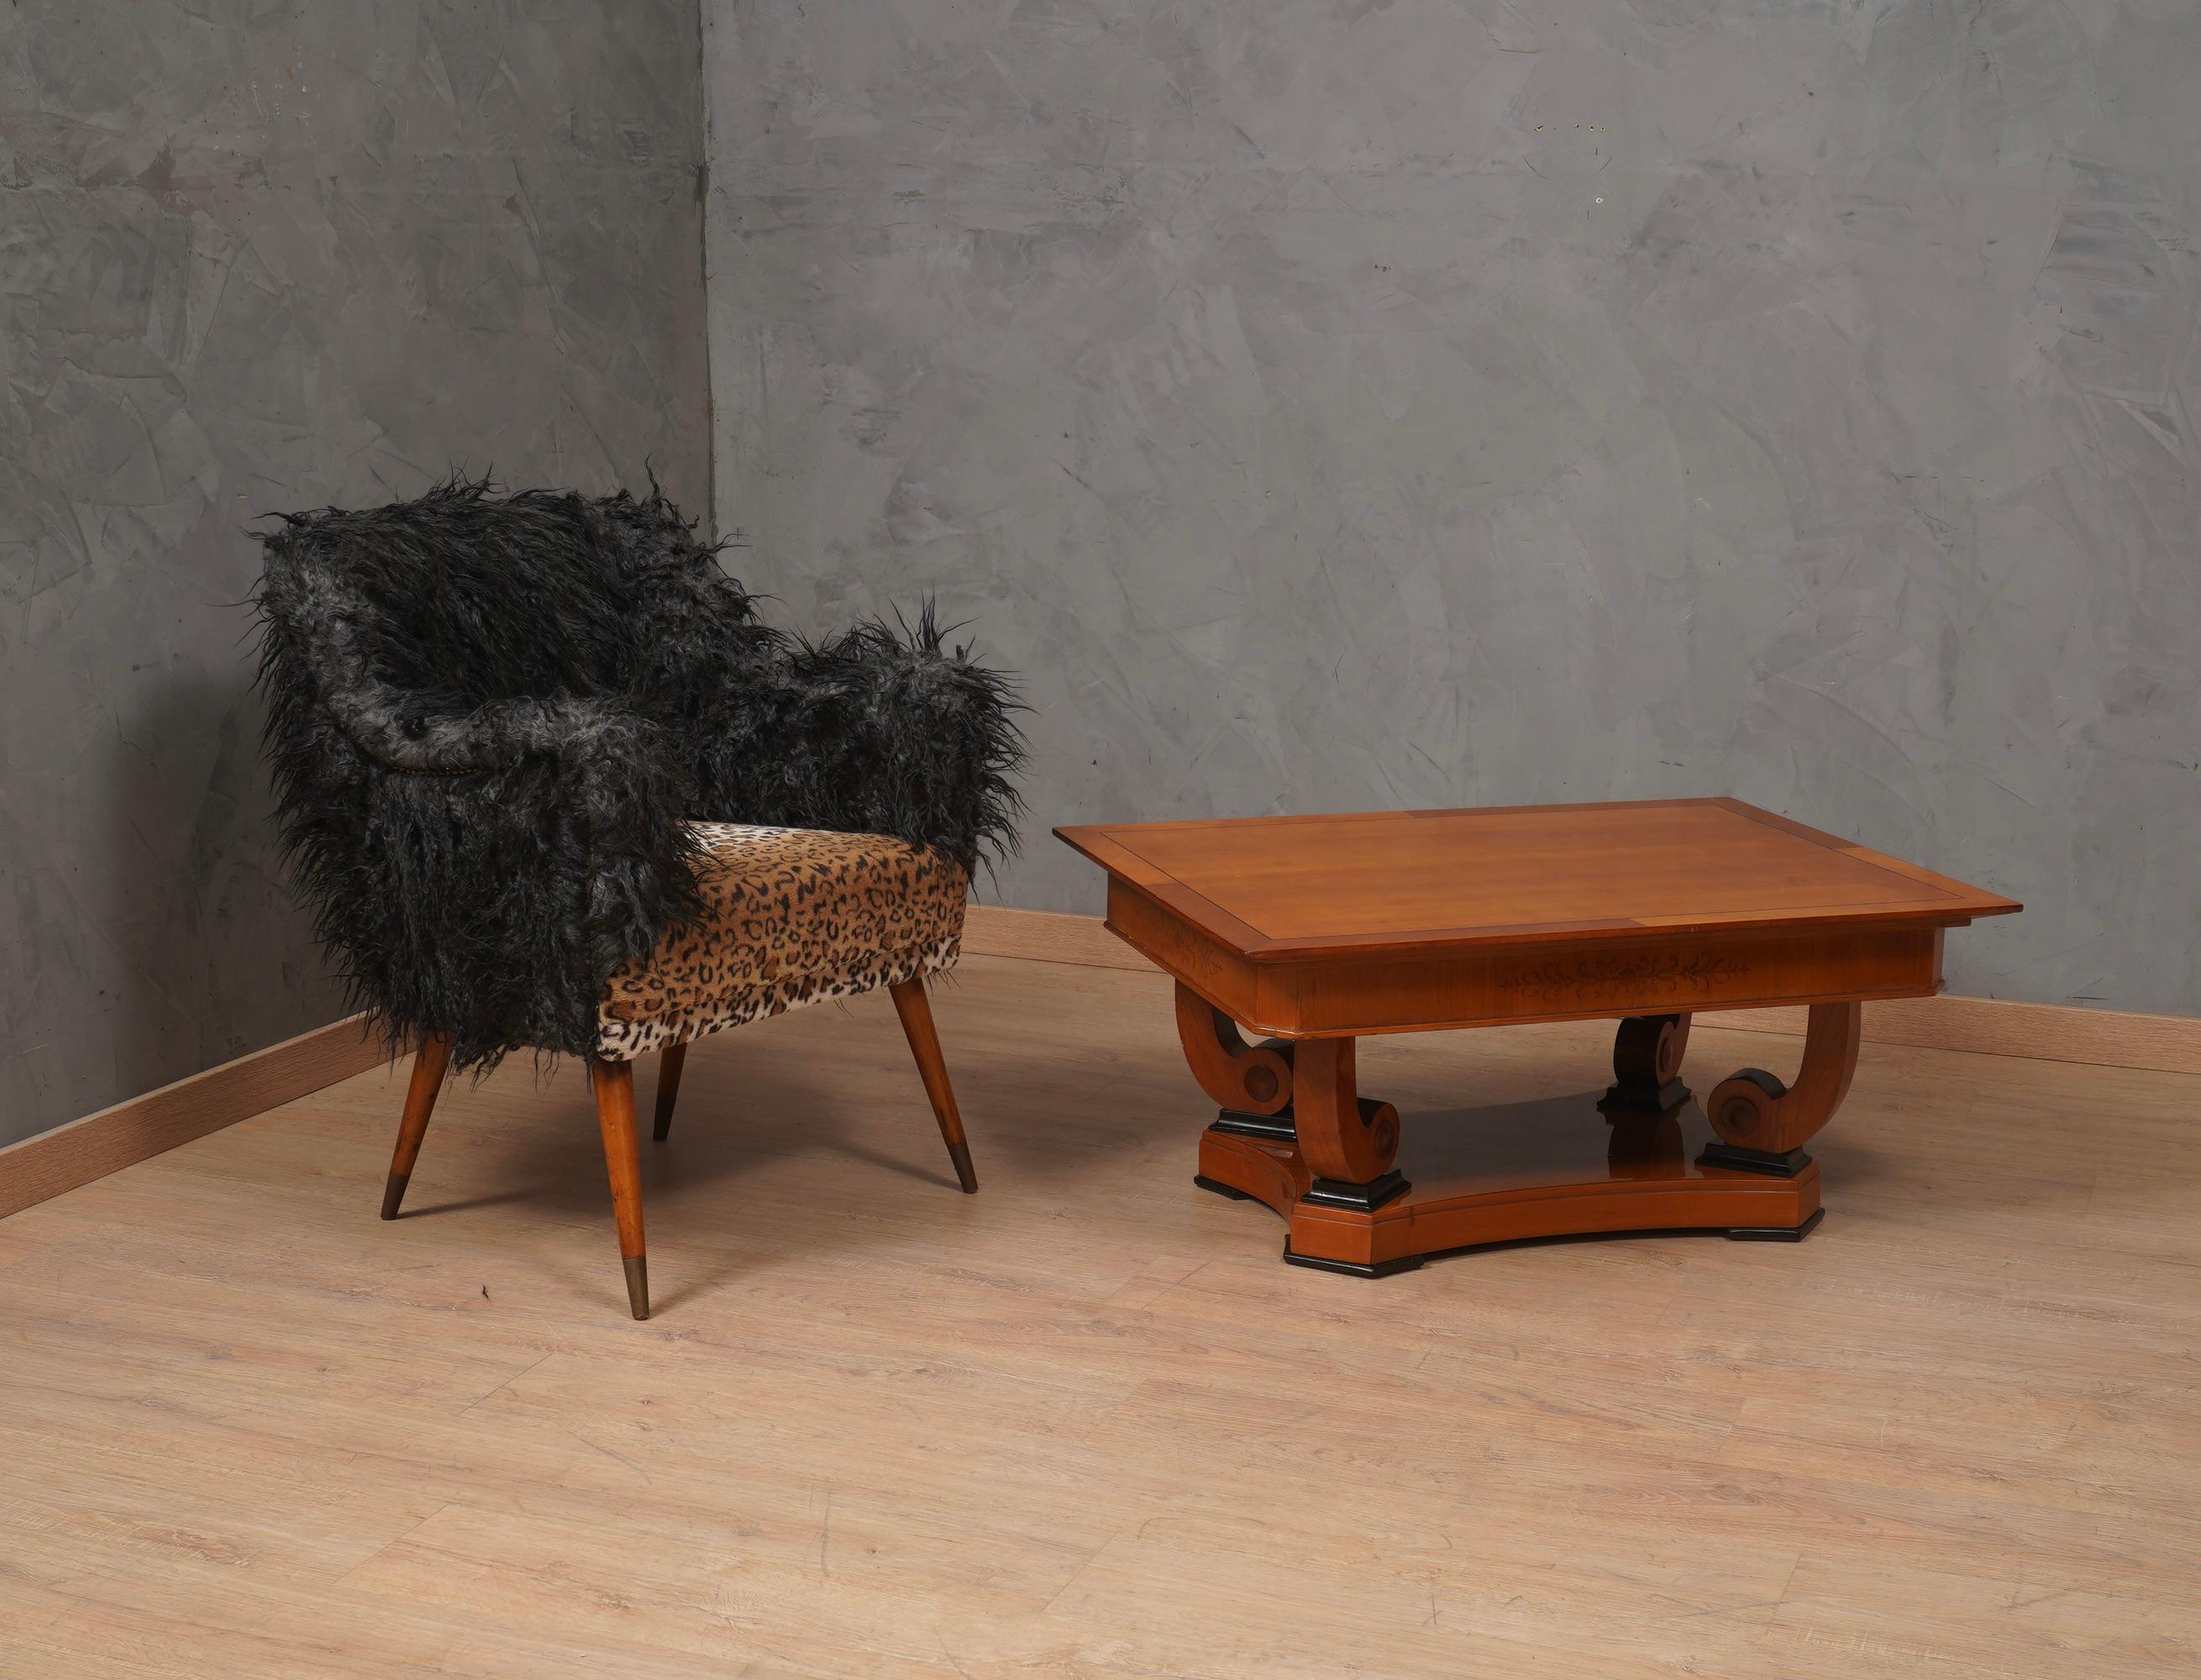 Die Ikone des Unternehmens, Nino Zoncada, hat diesen Sessel entworfen, der später alle Sessel des letzten Jahrhunderts geprägt und beeinflusst hat. Außergewöhnliches Design und außergewöhnlicher Komfort; überarbeitet, mit der Wahl und Kombination